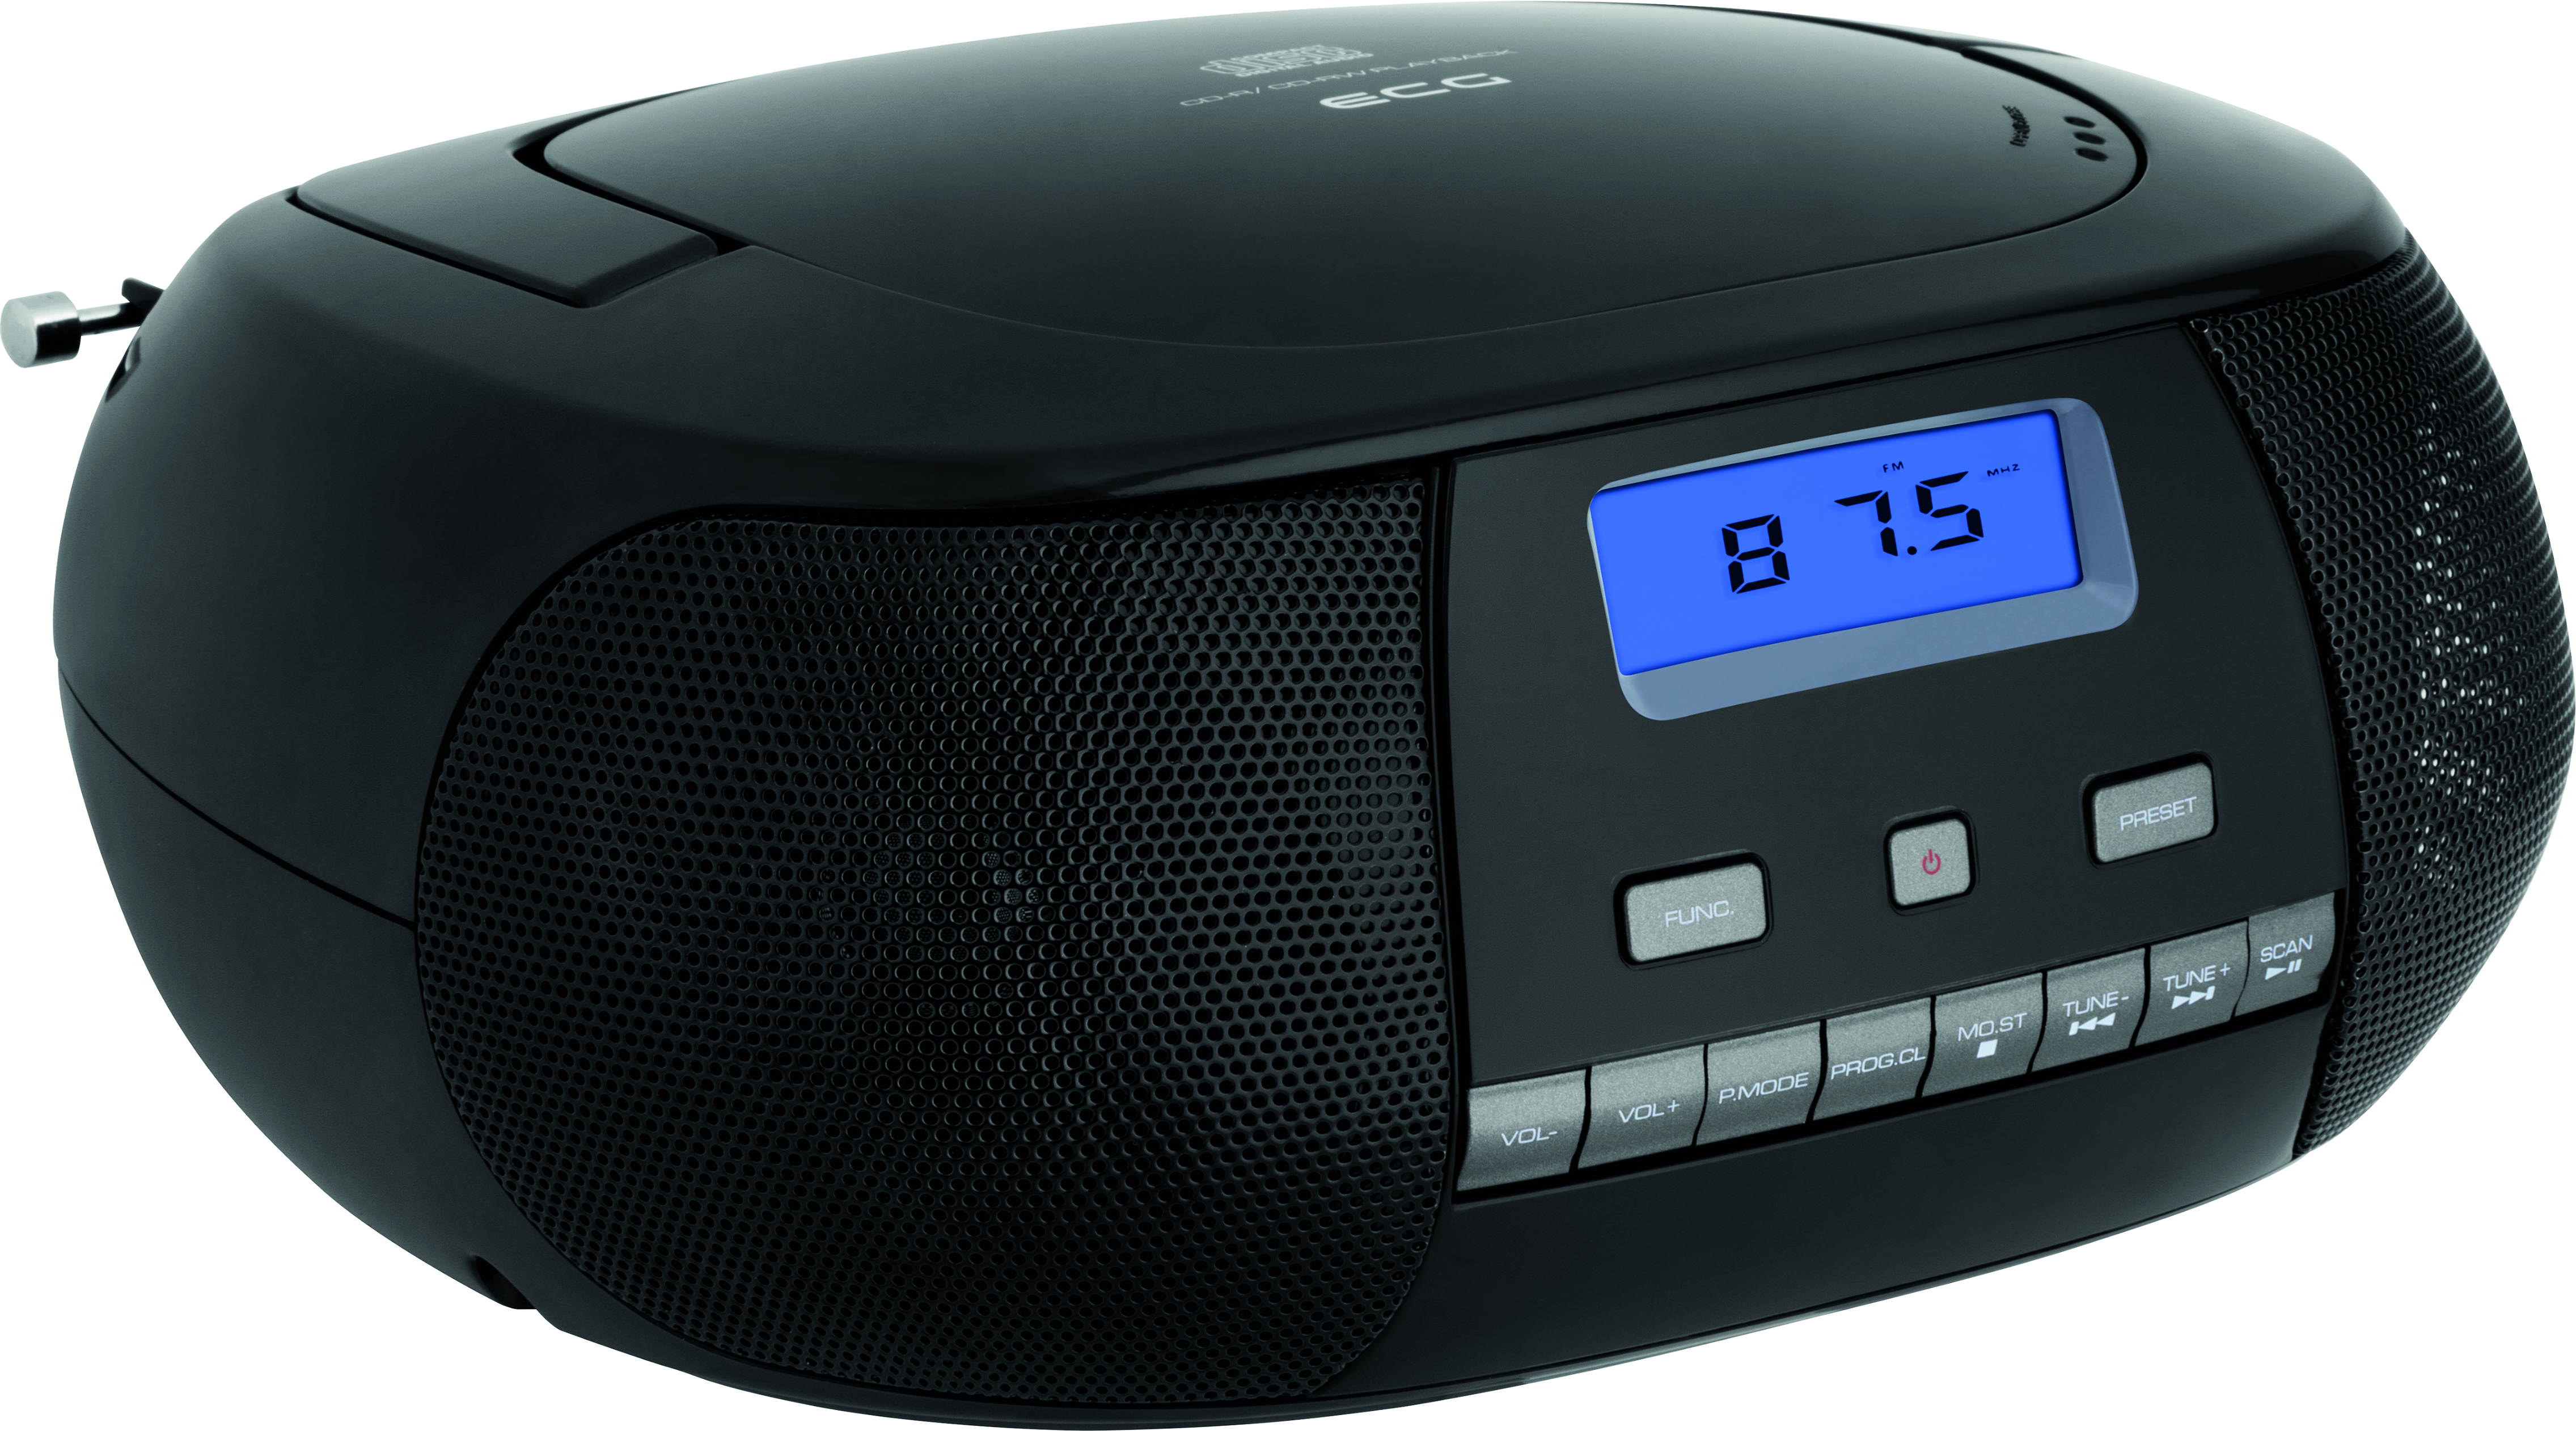 | | Black Portable 500 × Tuner CD-Radio W | PLL Player AUX | ECG 1 CD FM 2 black CDR |